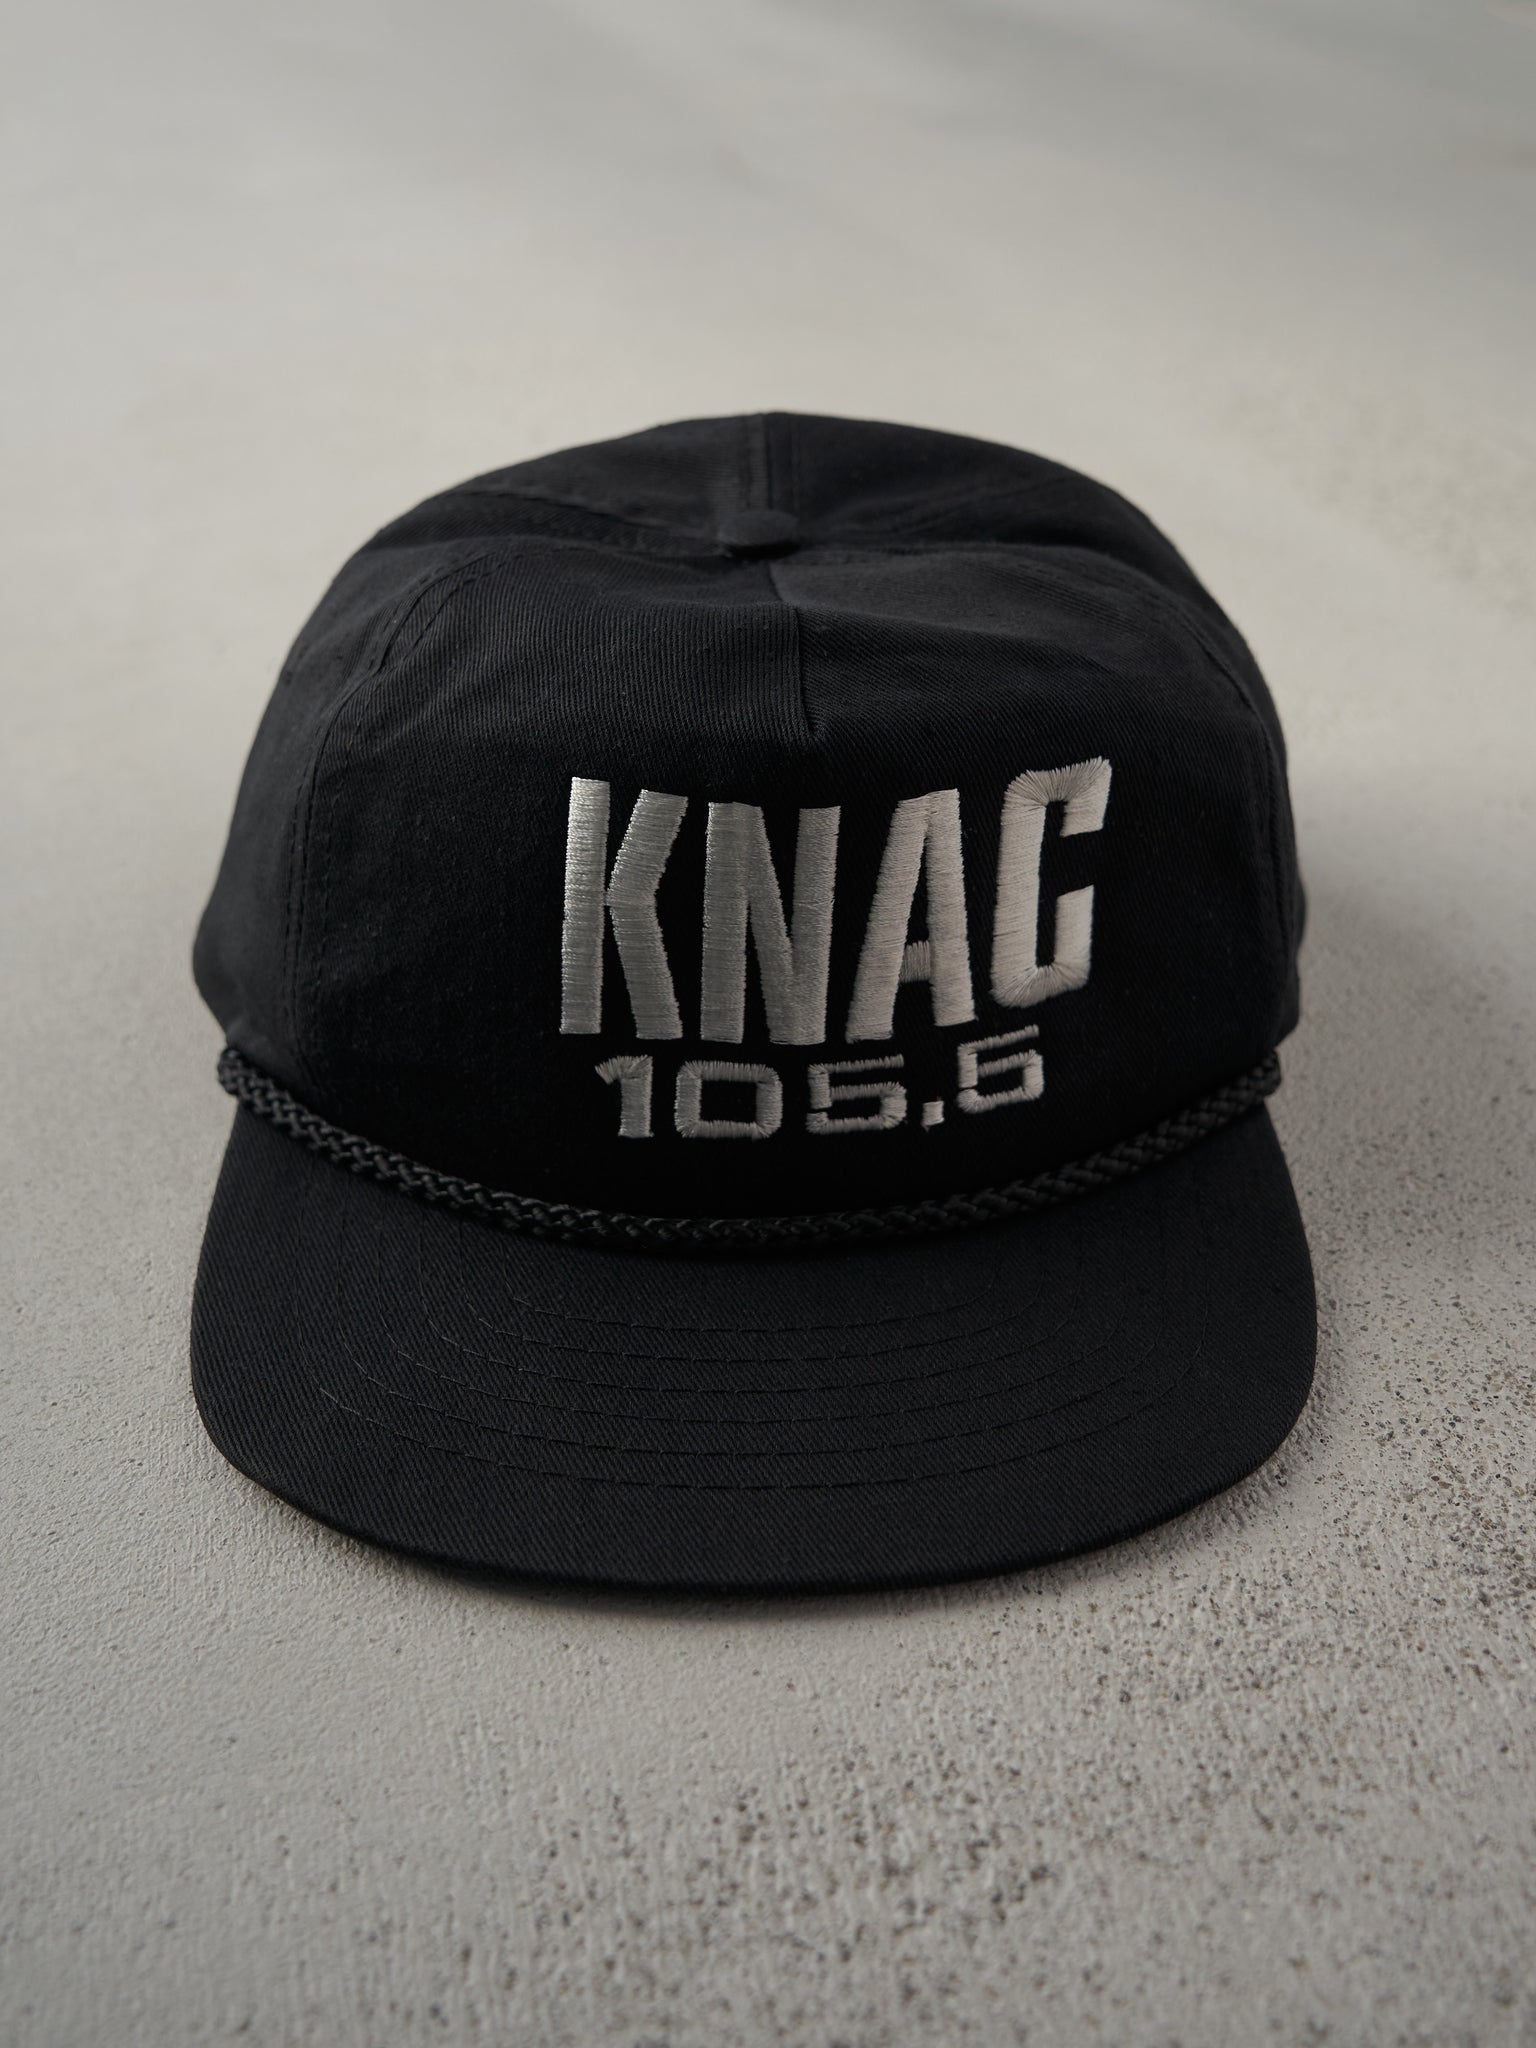 Vintage 80s Black KNAC 105.5 Radio Embroidered Snapback Hat